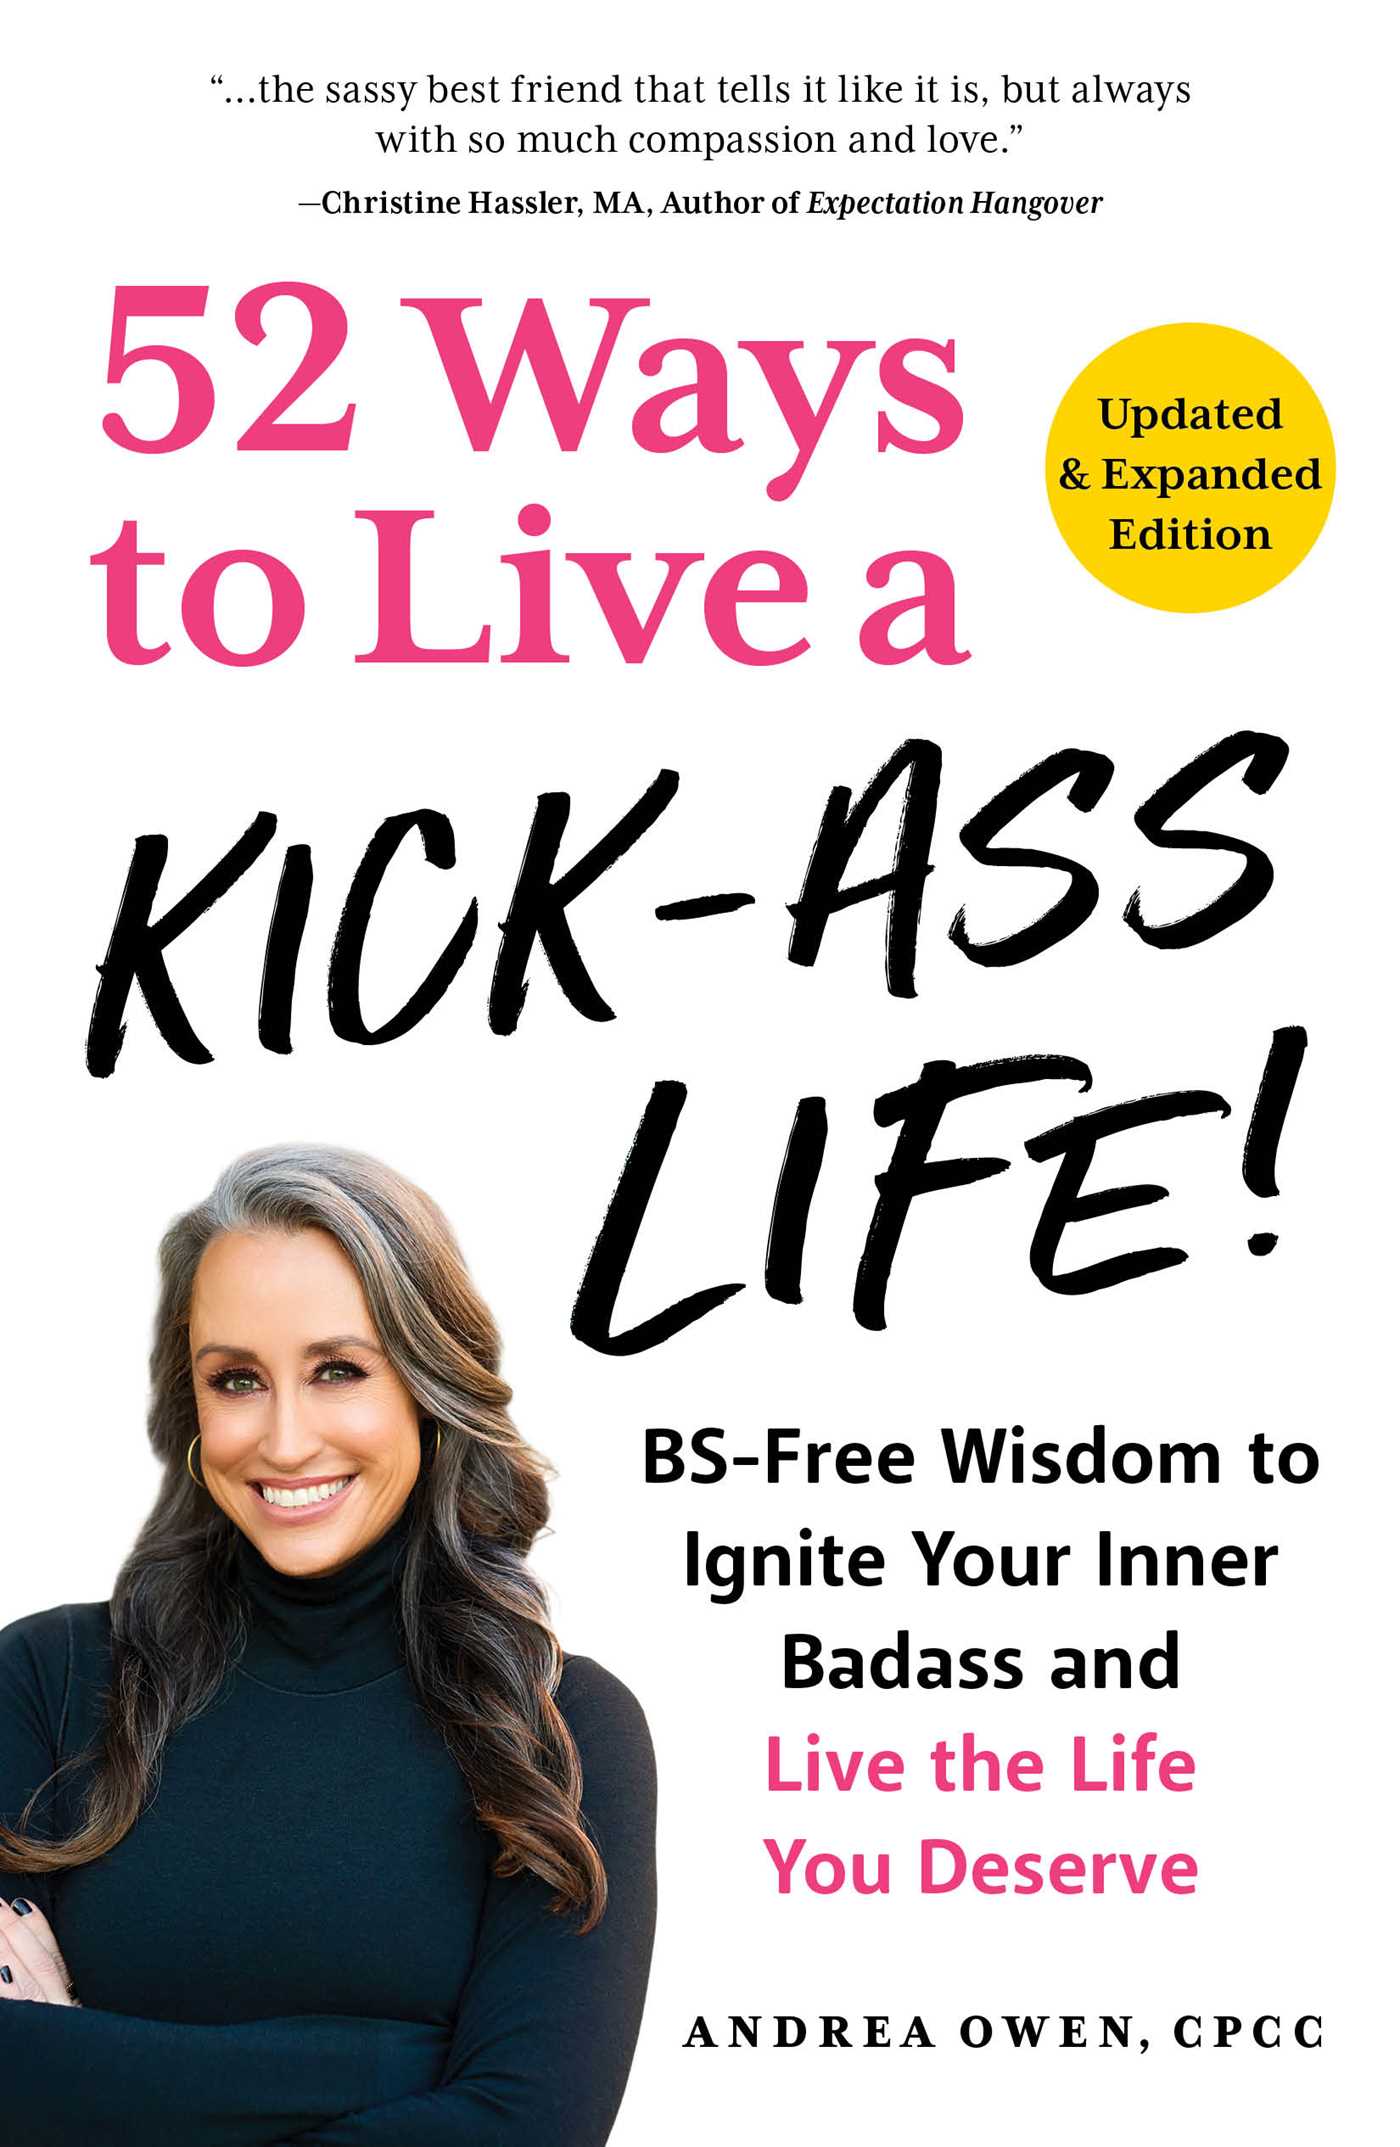 52 WAYS TO LIVE A KICK-ASS LIFE